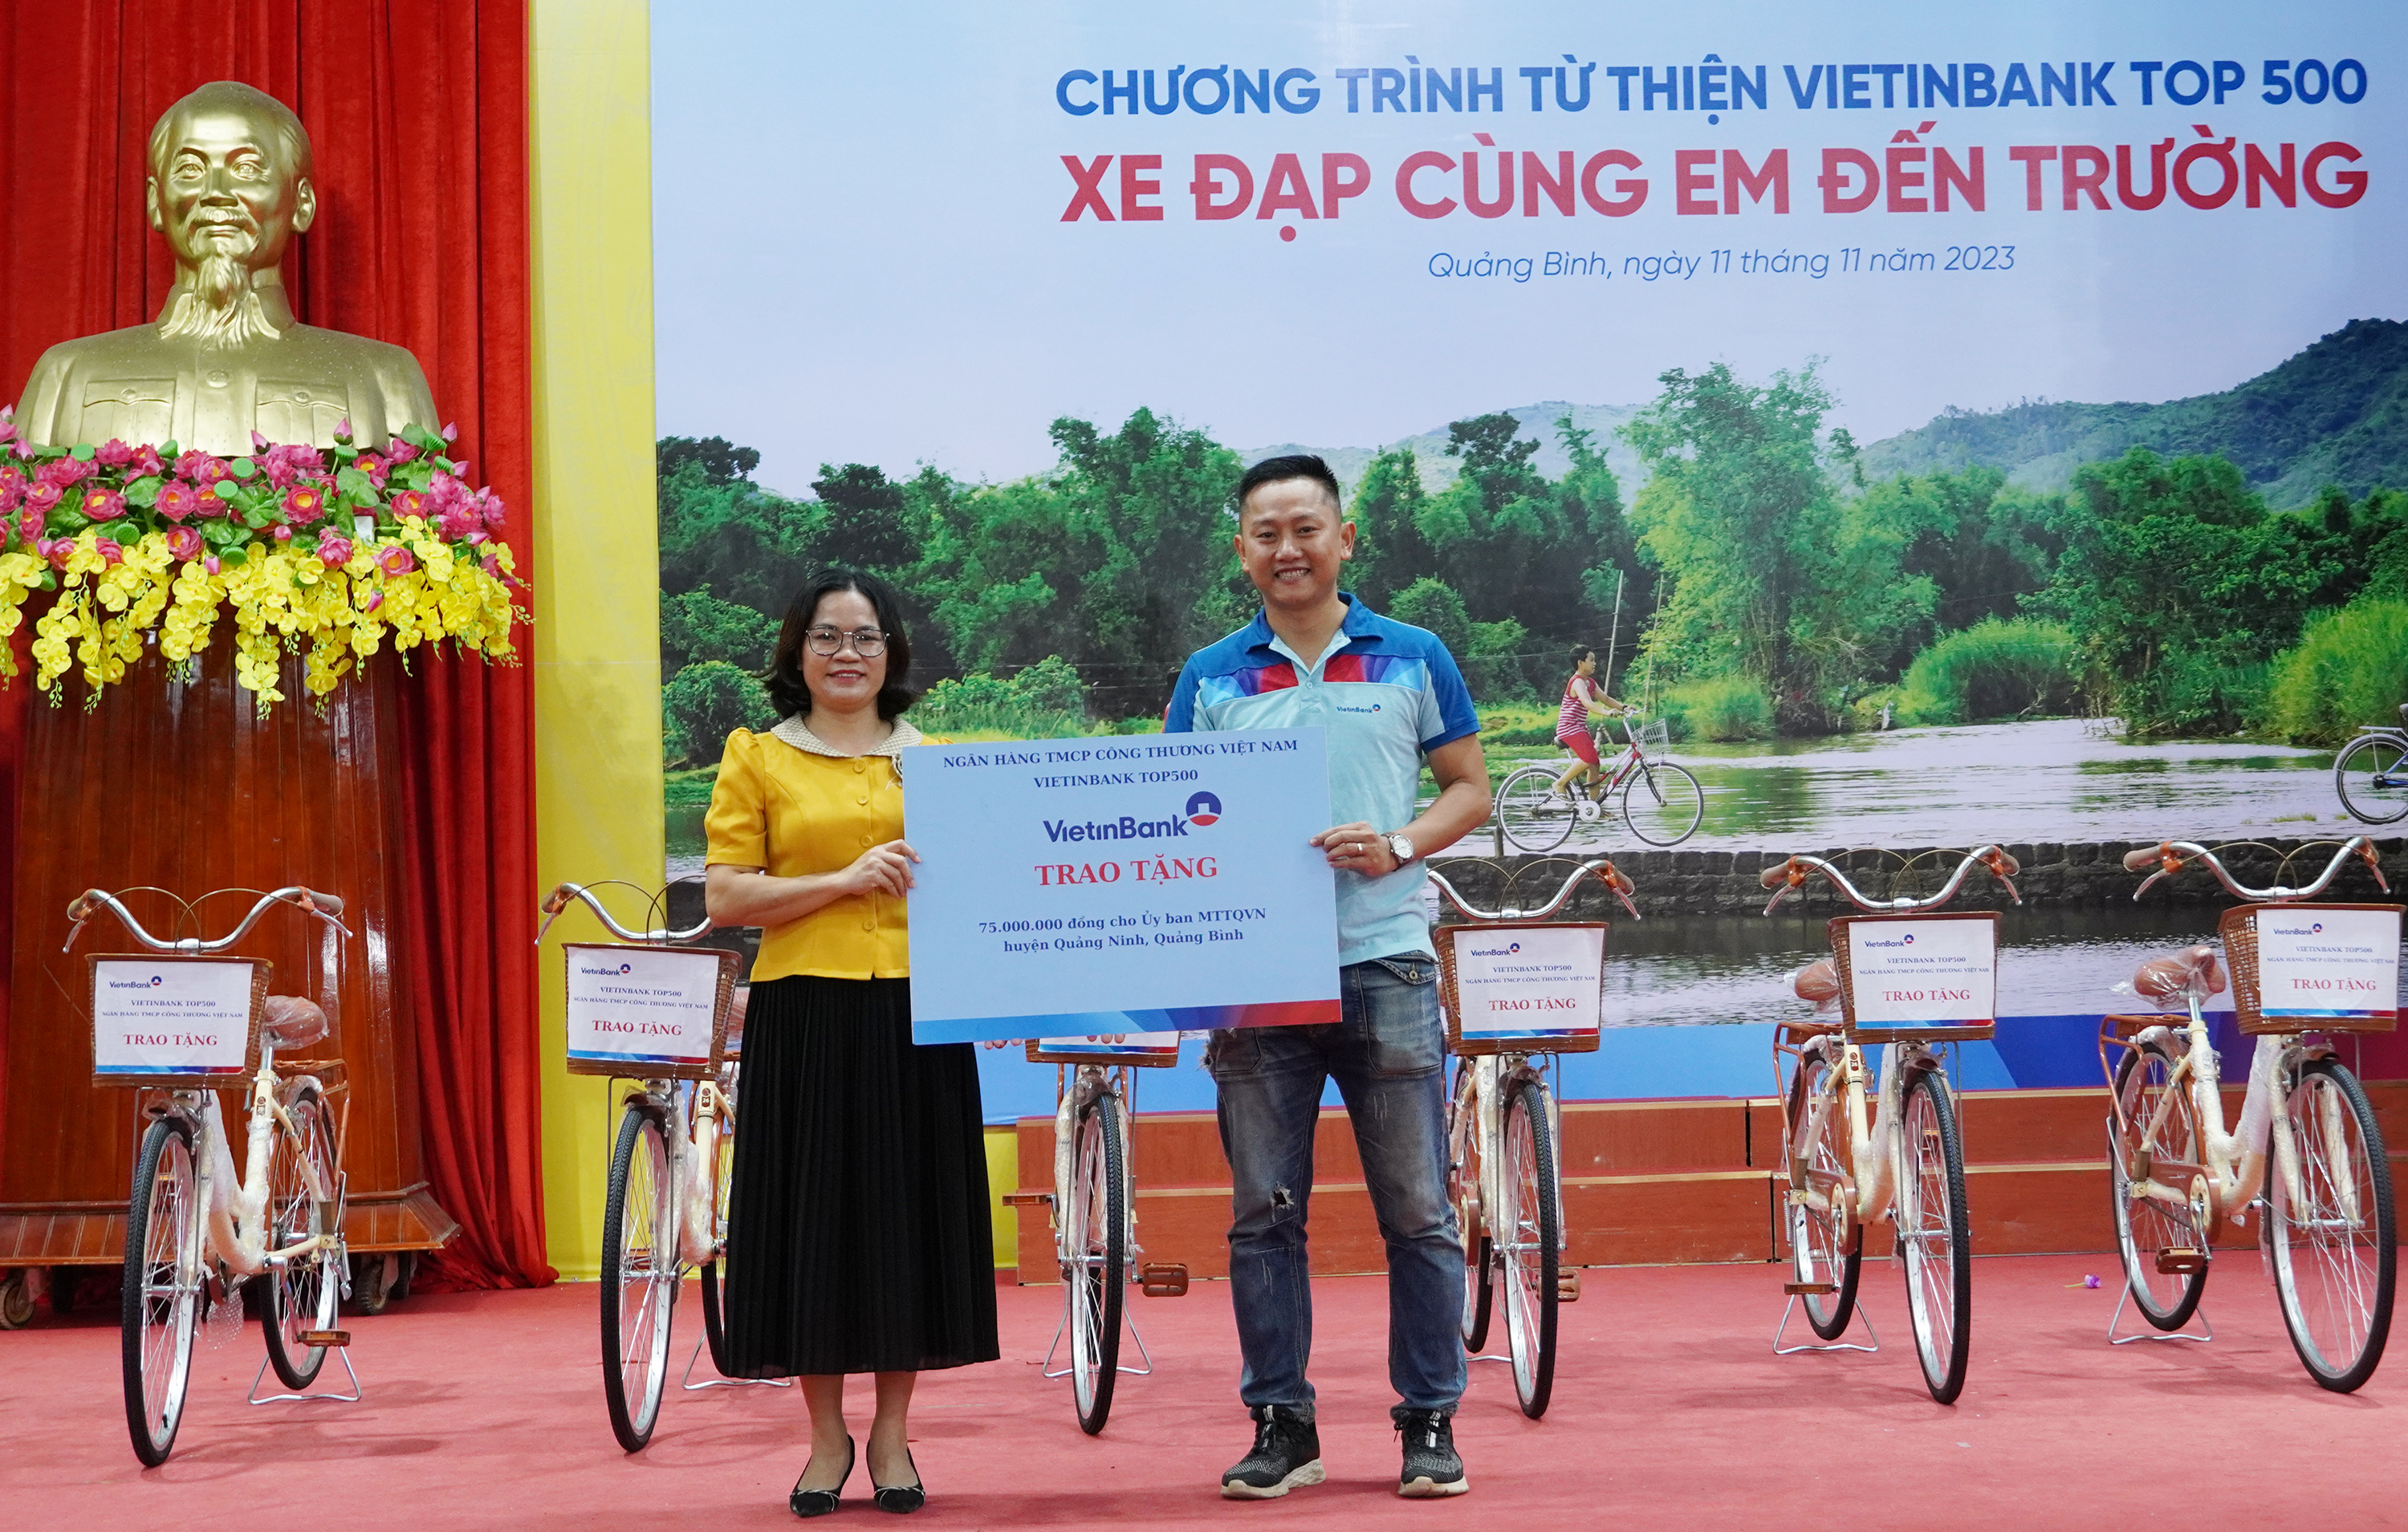 Đoàn từ thiện Hipo VietinBank top 500 trao tặng 75 triệu đồng cho Ủy ban MTTQVN huyện Quảng Ninh.